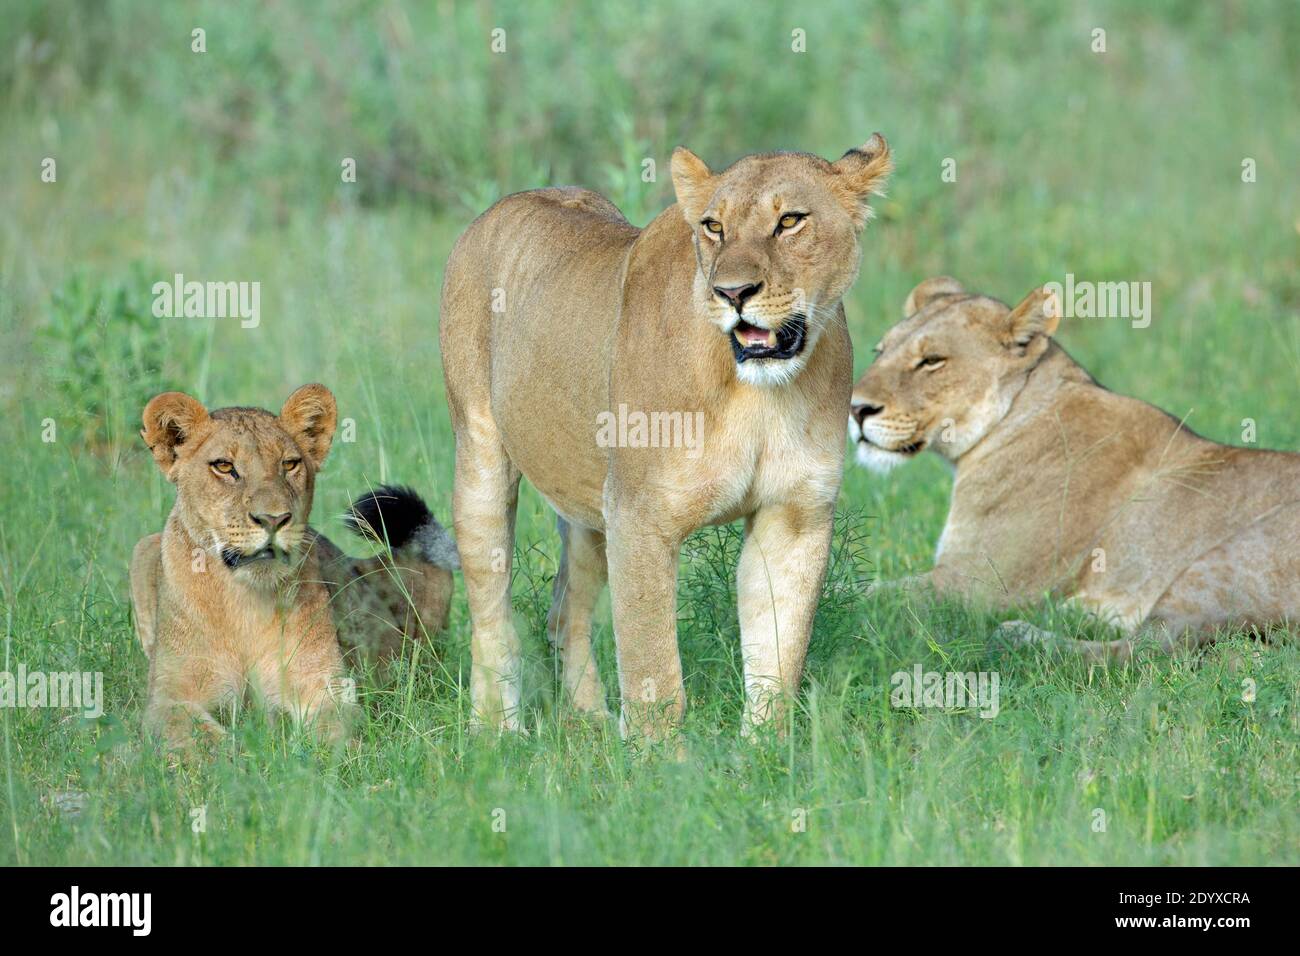 Lionesses africaines (Panthera leo). Trois membres d'une fierté, debout, assis, couché. Des personnes saines et bien entretenues, qui regardent avec des yeux brillants dans ap Banque D'Images